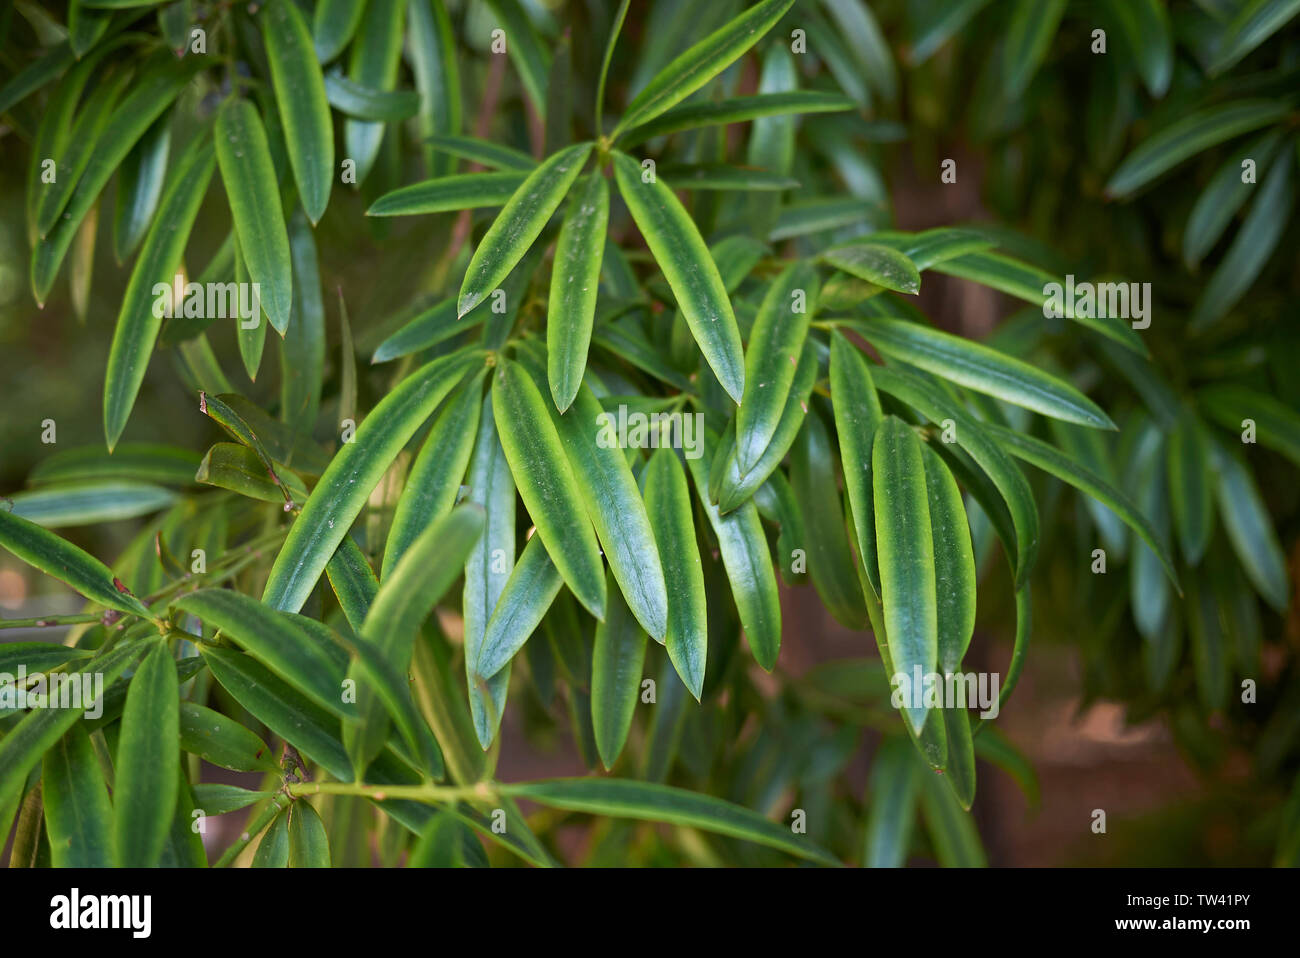 Podocarpus neriifolius tropical tree Stock Photo